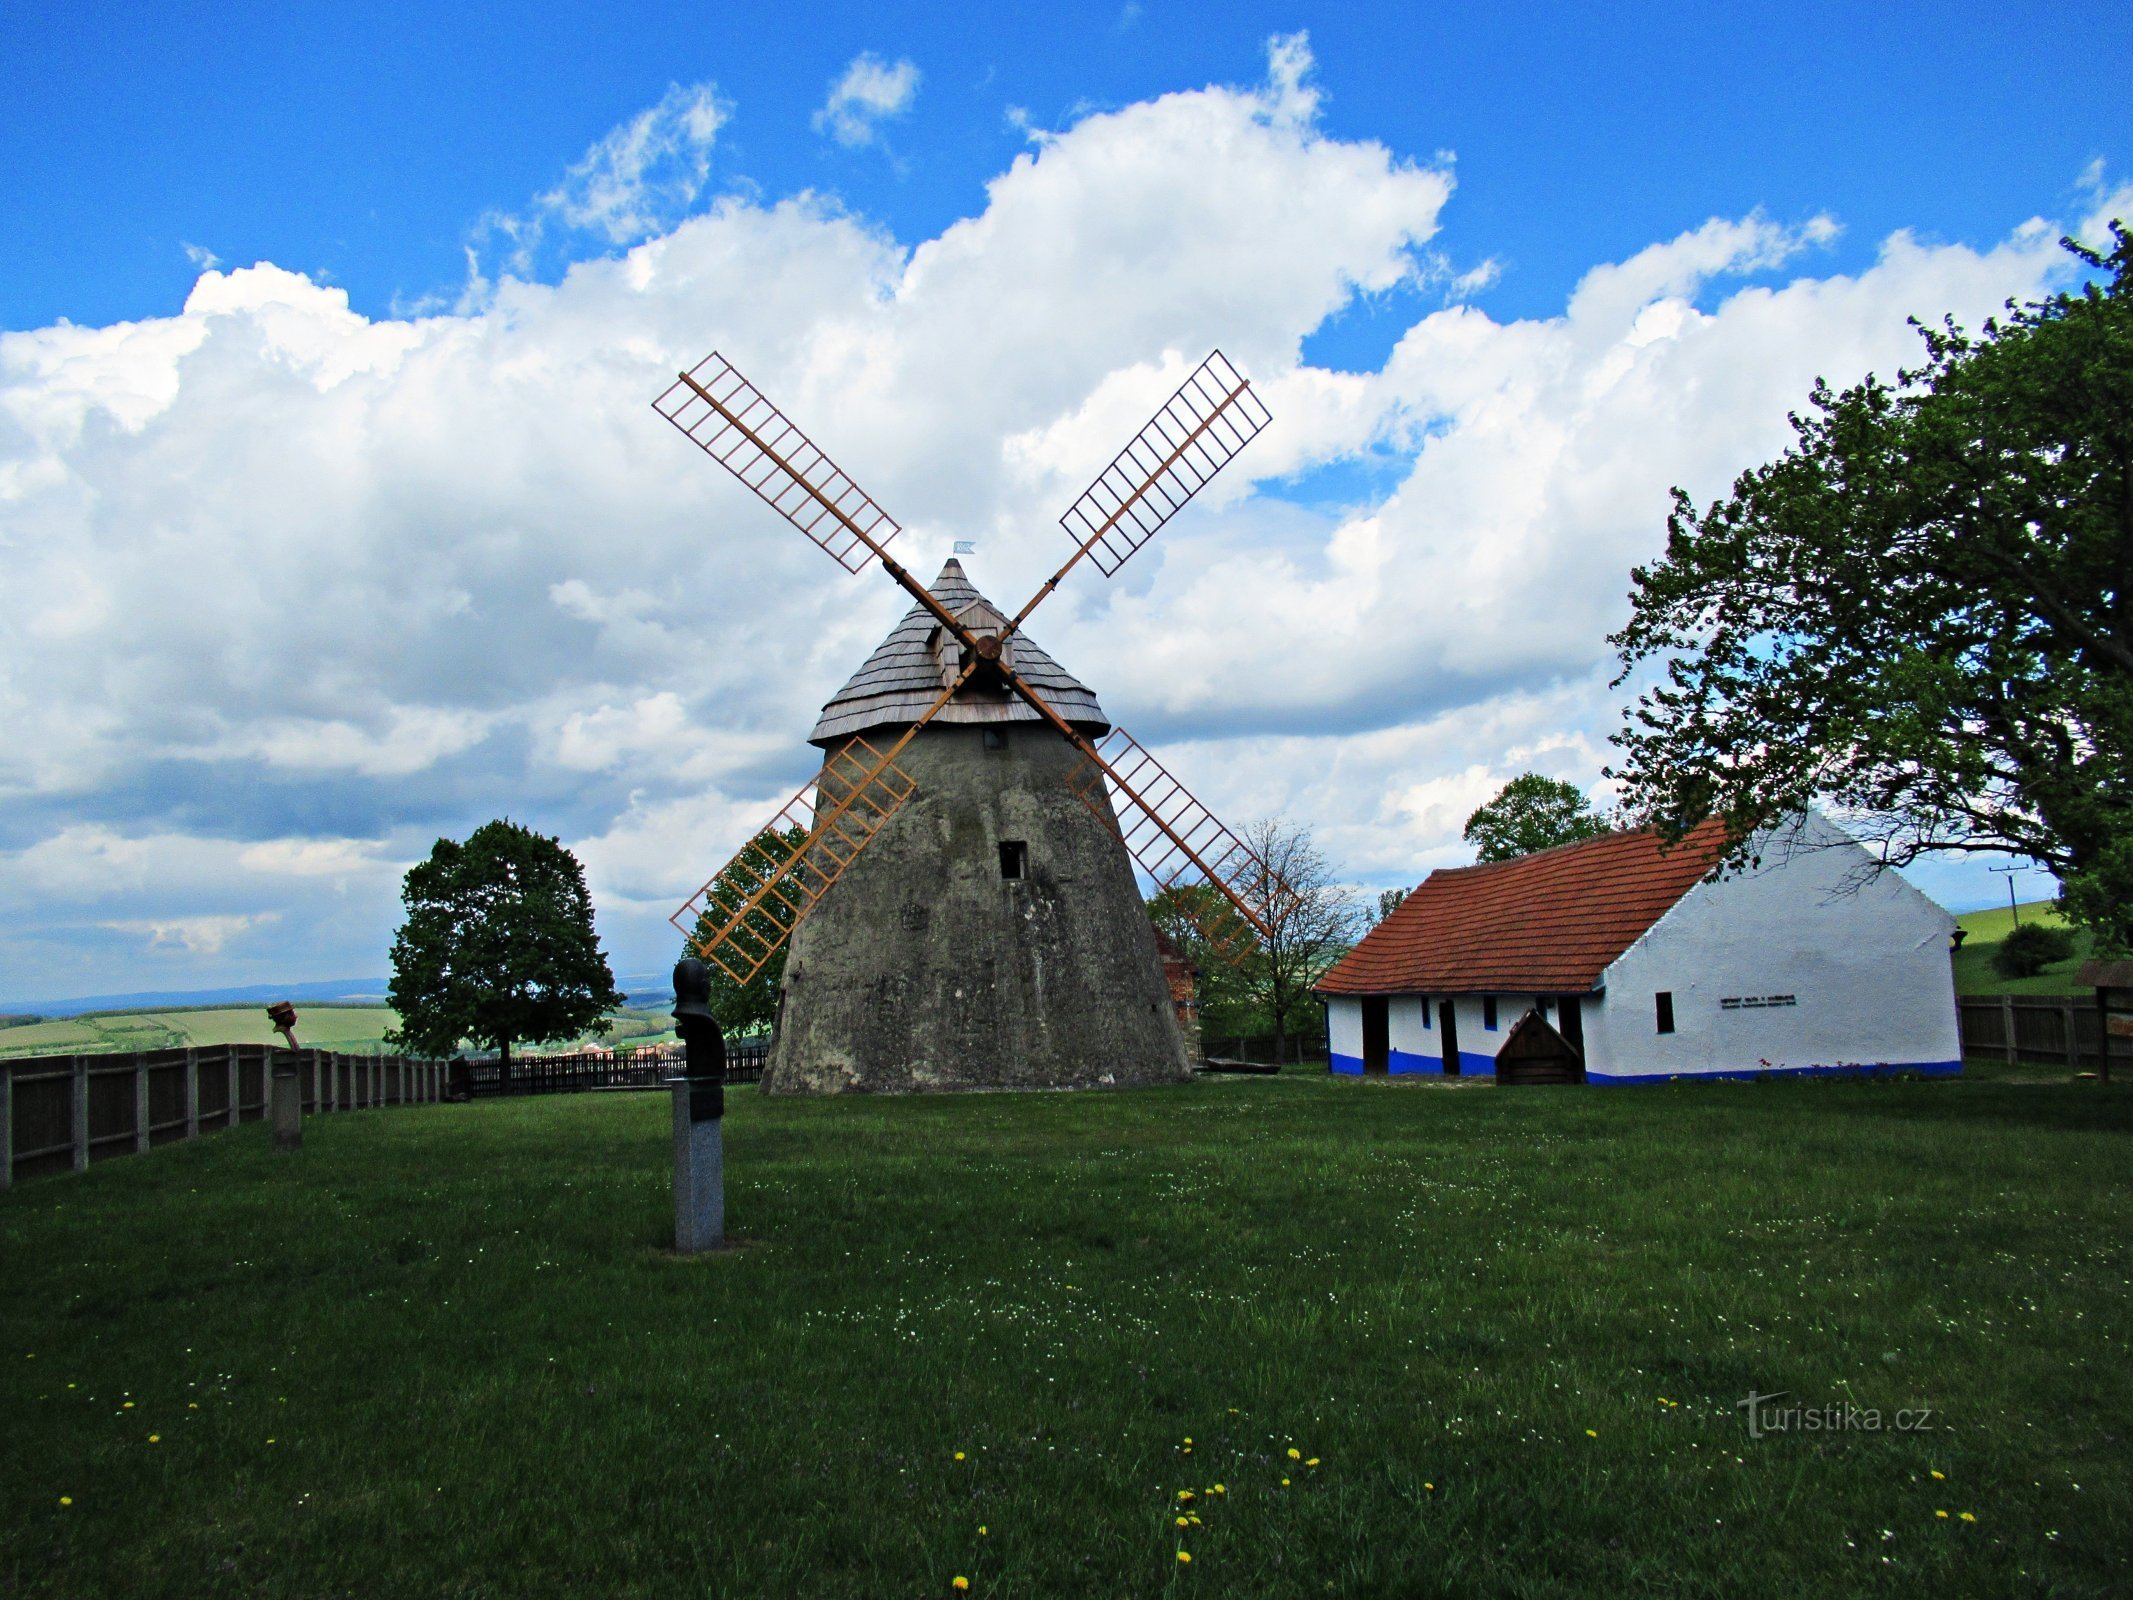 Het gebied van de windmolen boven het dorp Kuželov in Slovácko